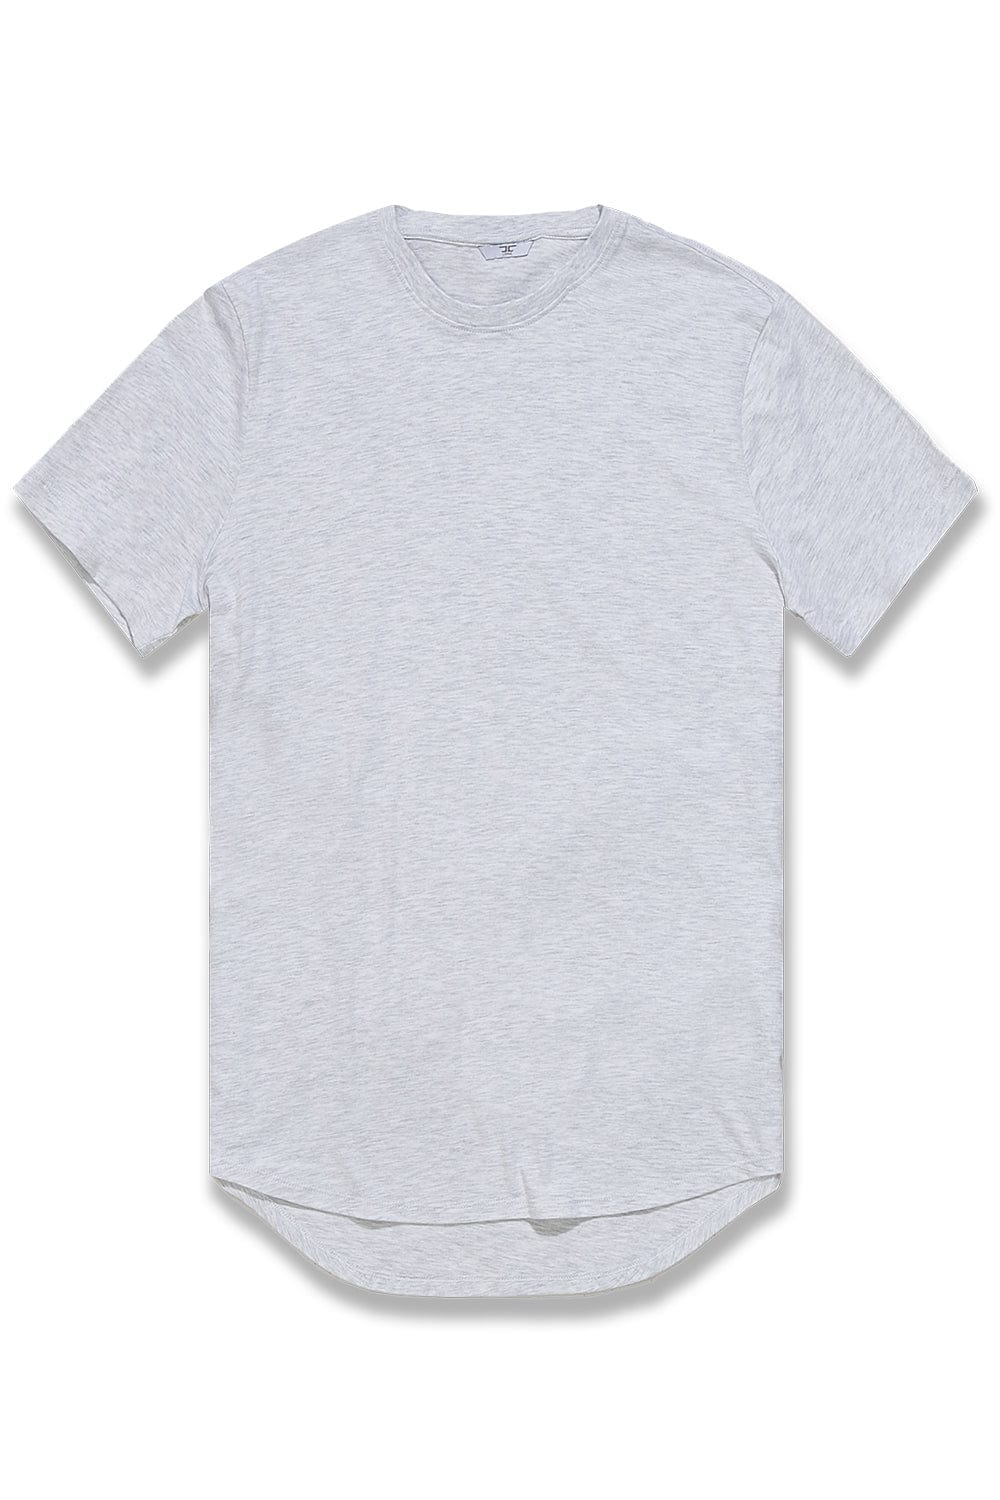 JC Big Men Big Men's Scallop T-Shirt (White Silver) White Silver / 4XL